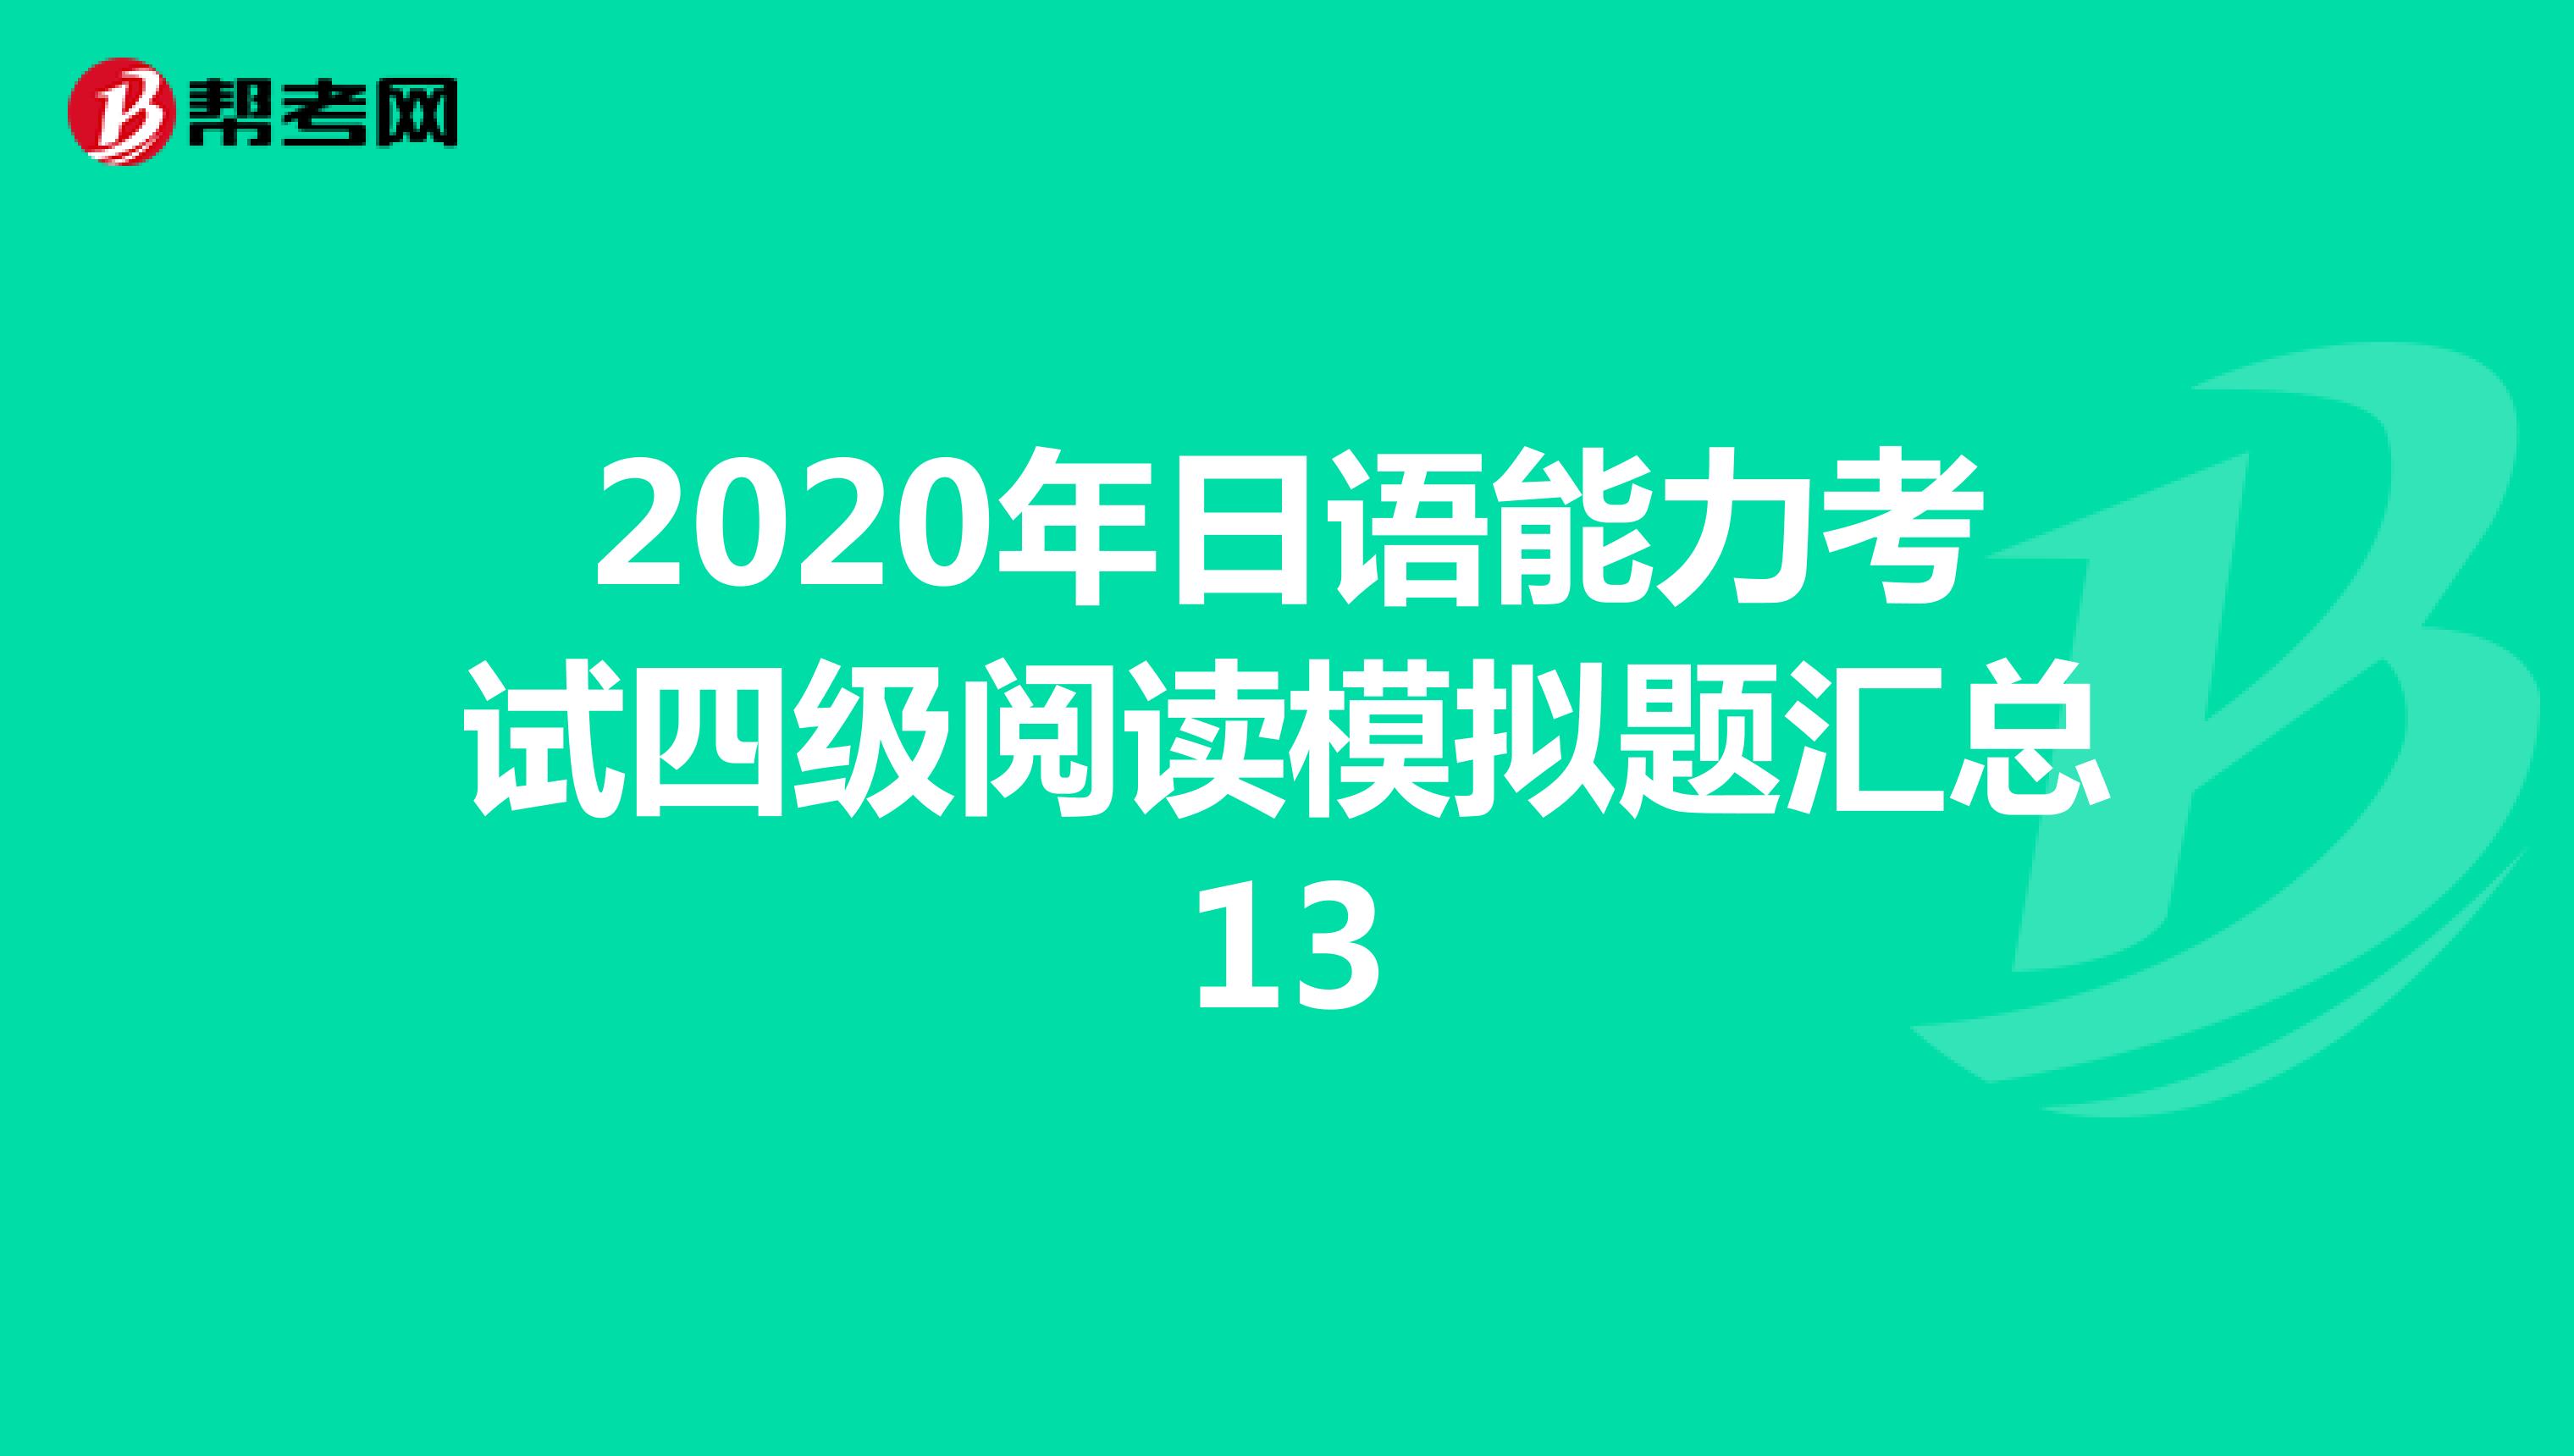 2020年日语能力考试四级阅读模拟题汇总13